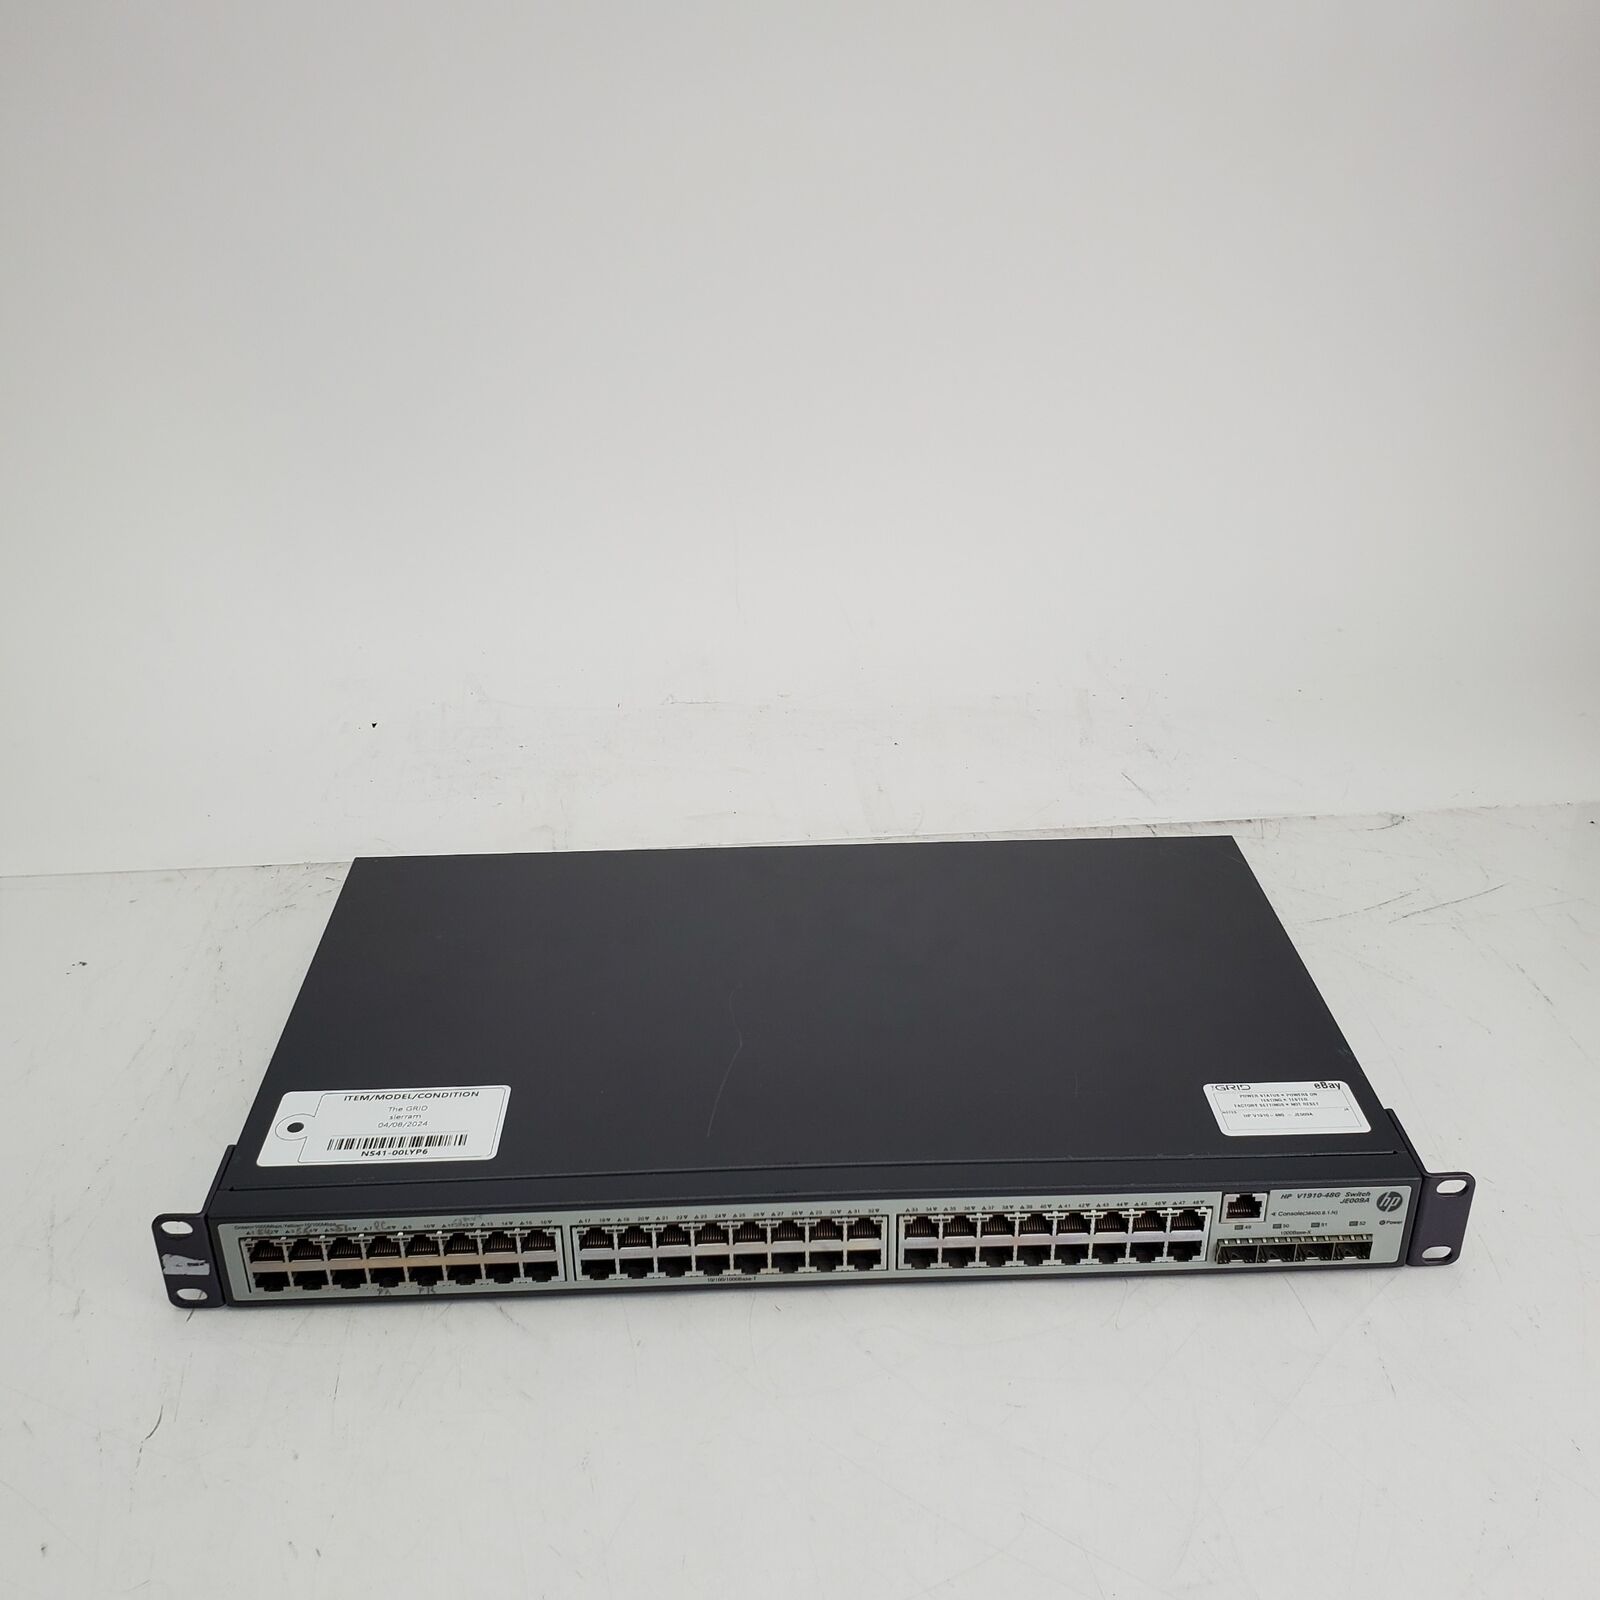 HP V1910-48G JE009A 48-Port Gigabit Ethernet Switch - Tested